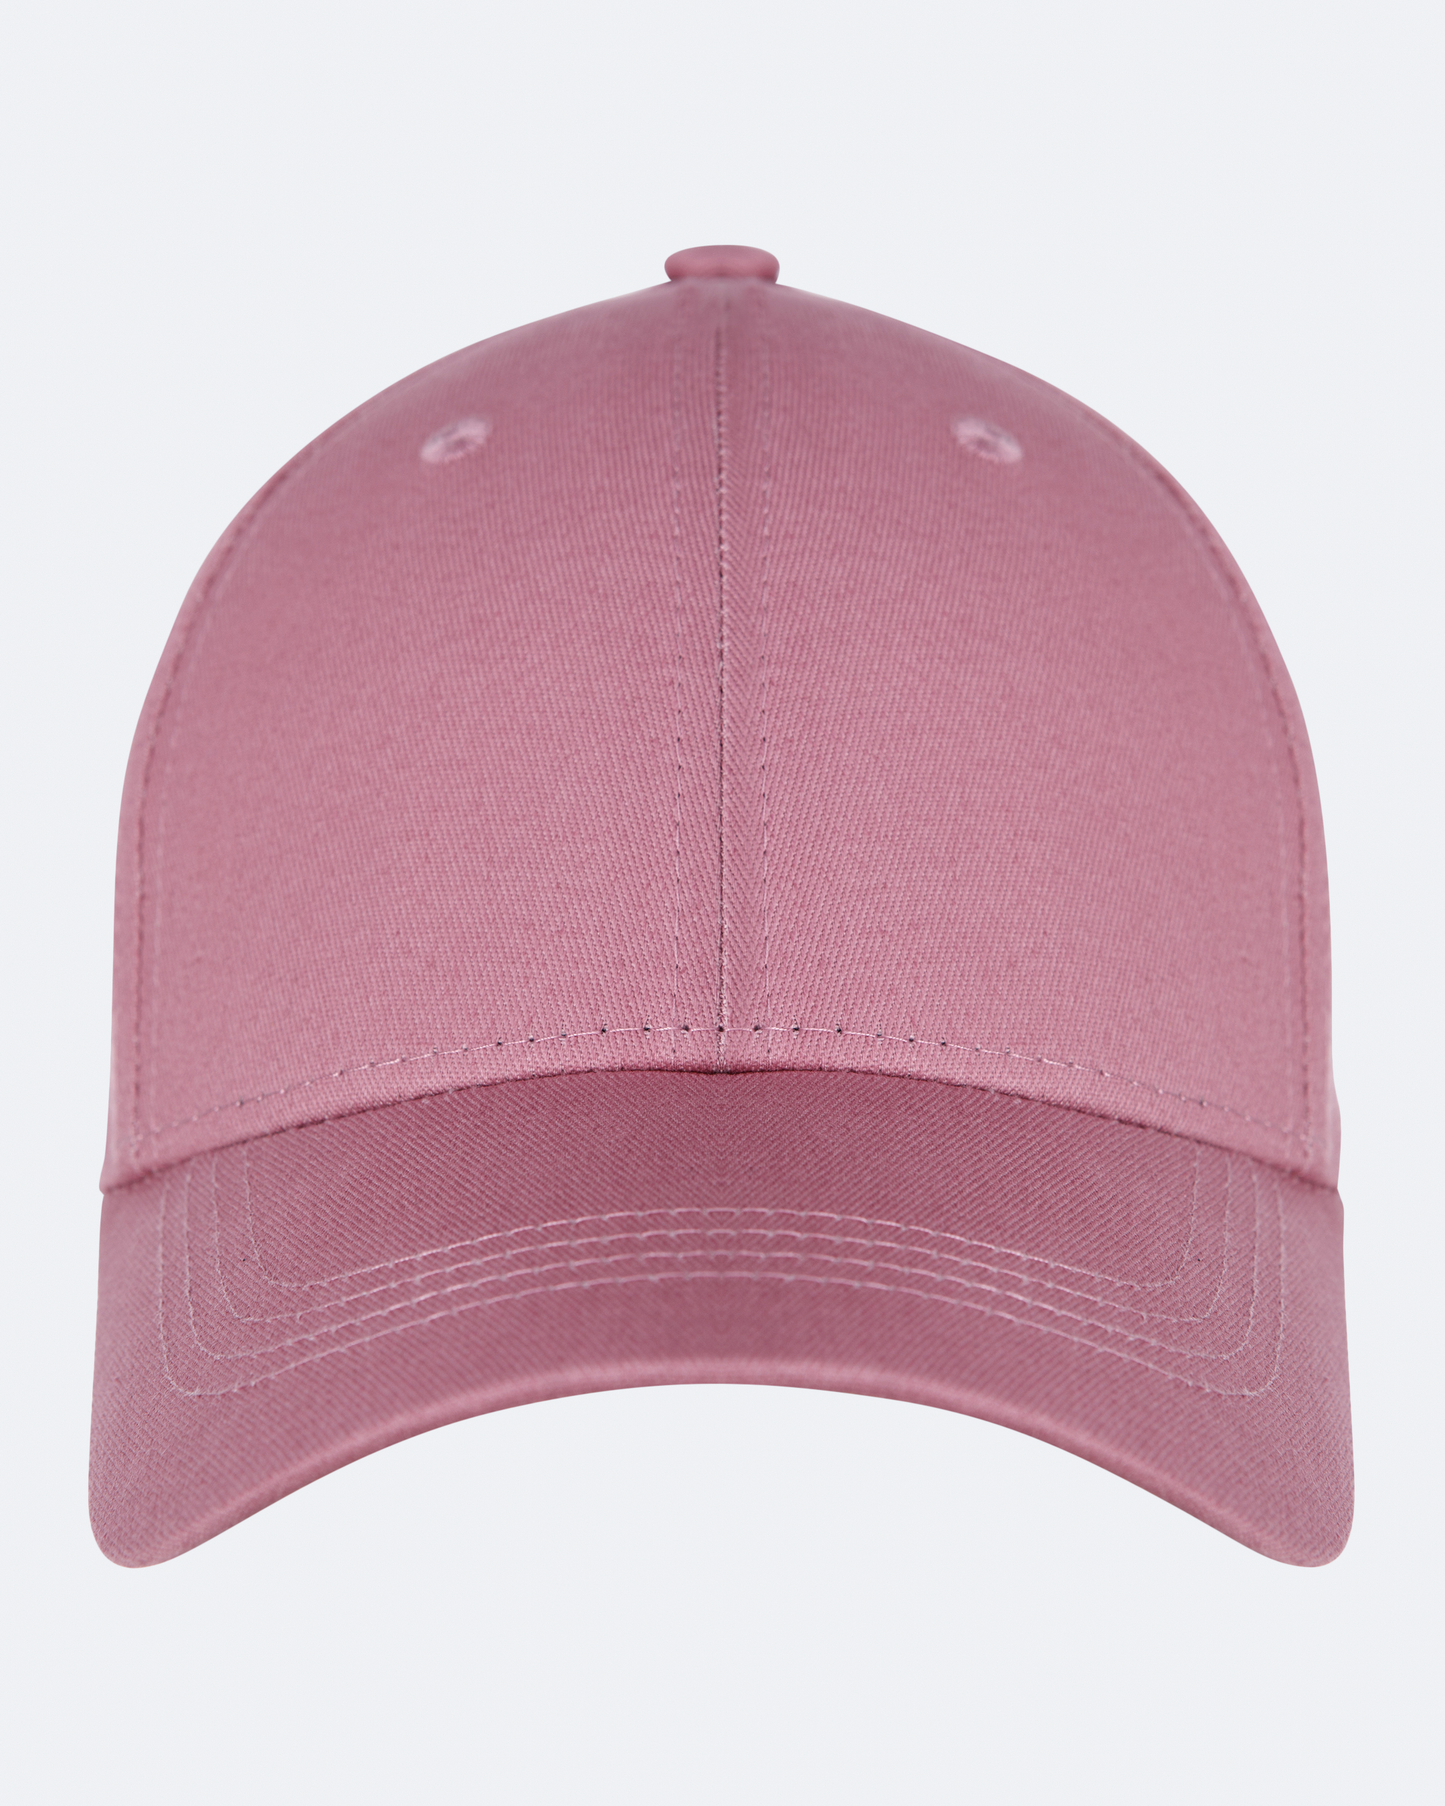 Cappello da baseball rosa antico con cinturino posteriore